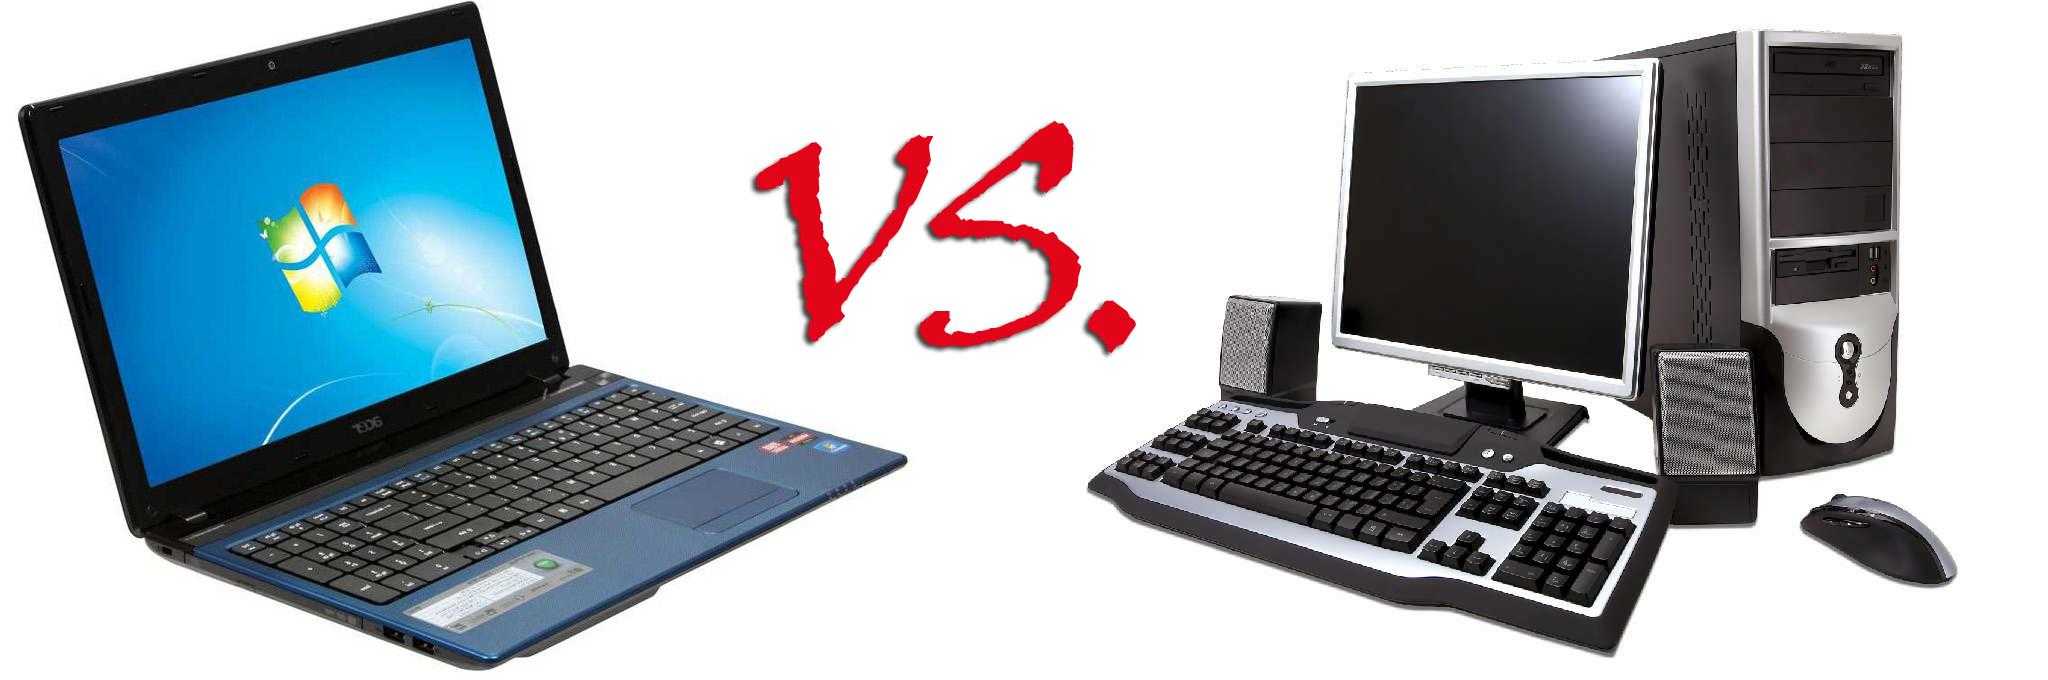 Проблема выбора: ноутбук или компьютер